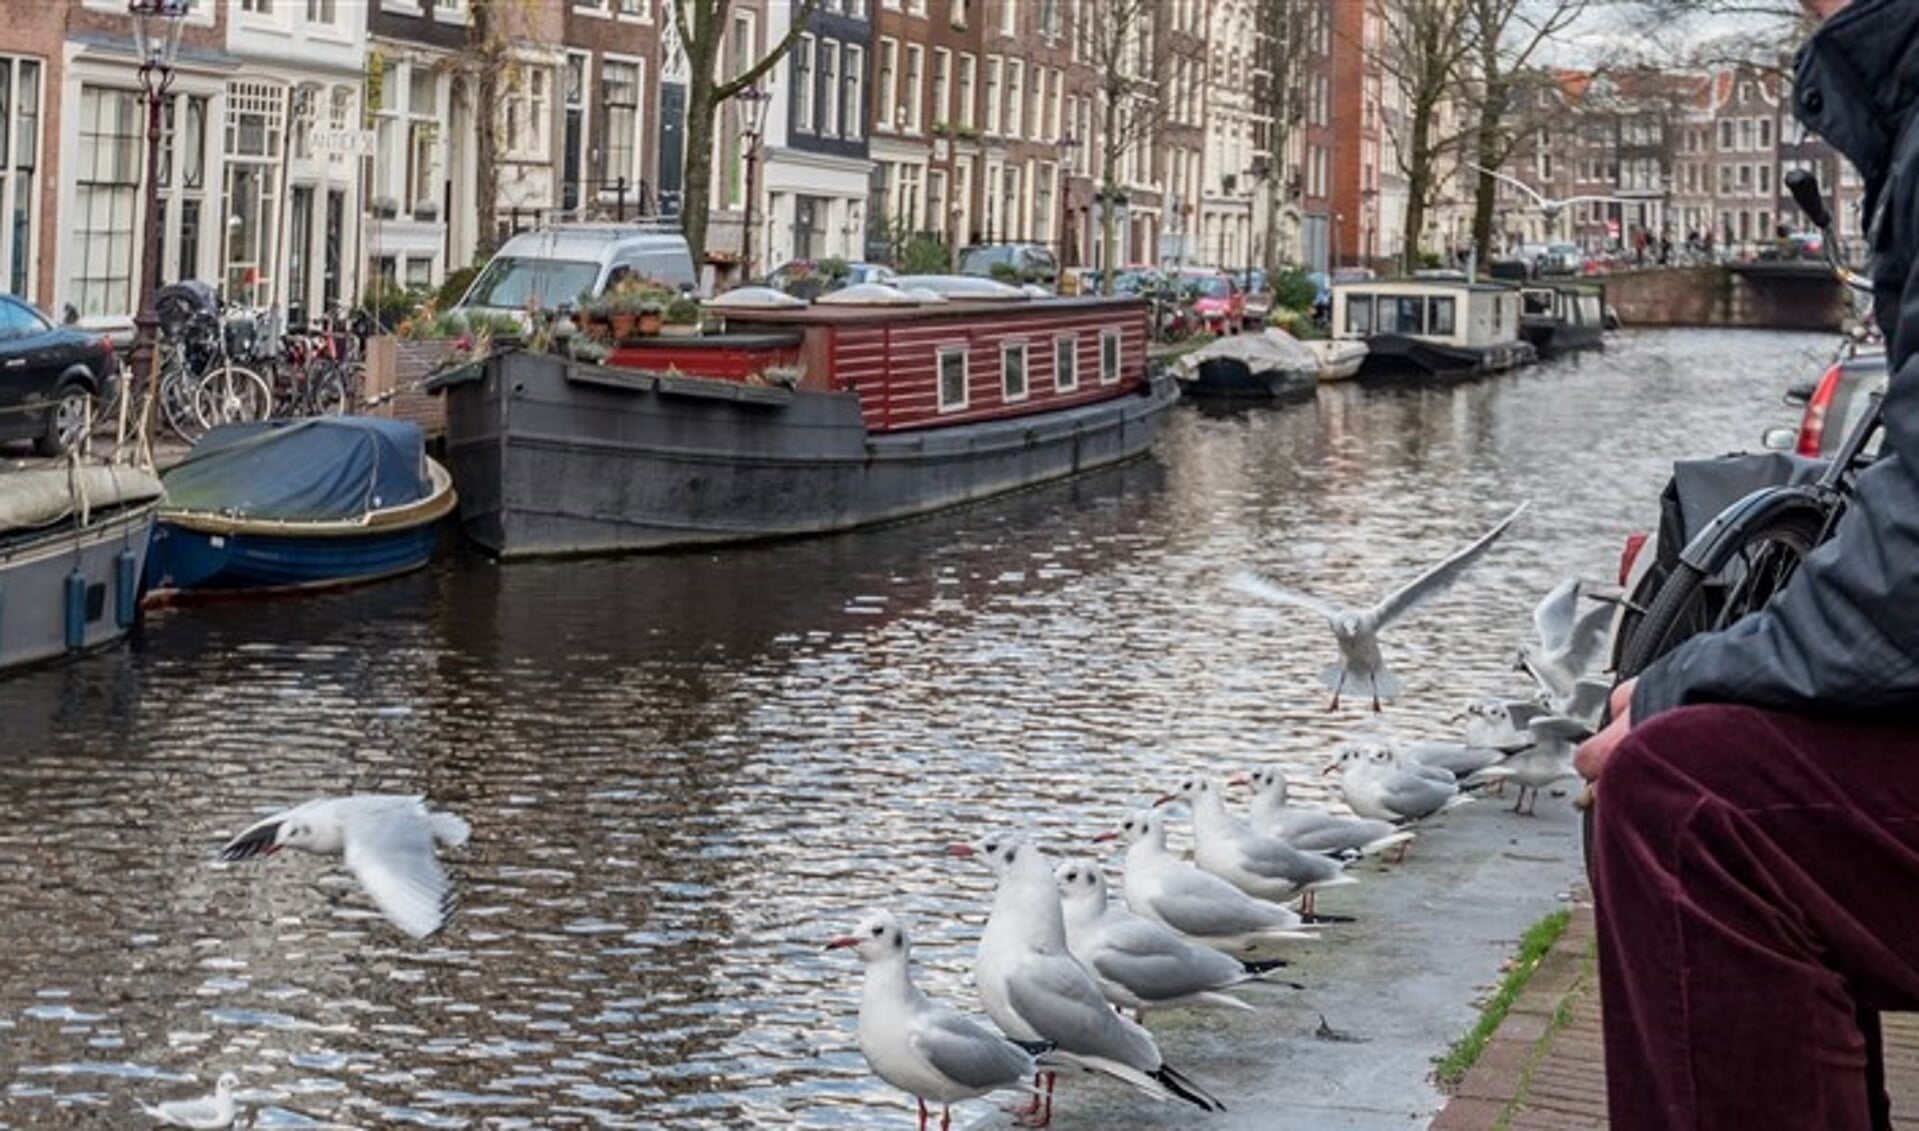 Ontdek ook waar de dieren wonen en zie hoe dichtbij de natuur is in de stad. (Foto: gemeente Amsterdam)